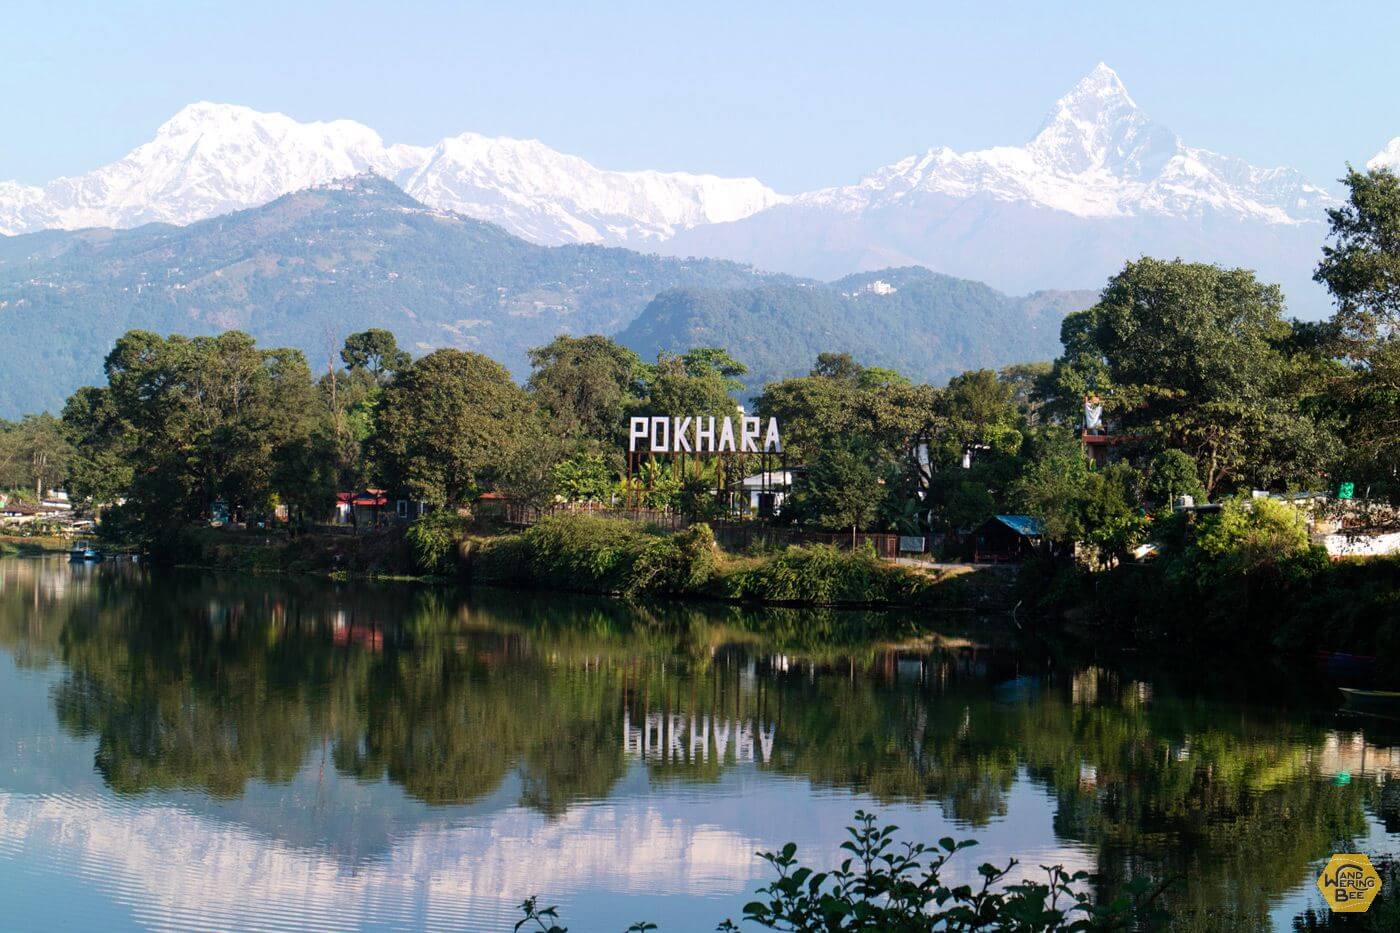 ネパール第二の観光地ポカラについて